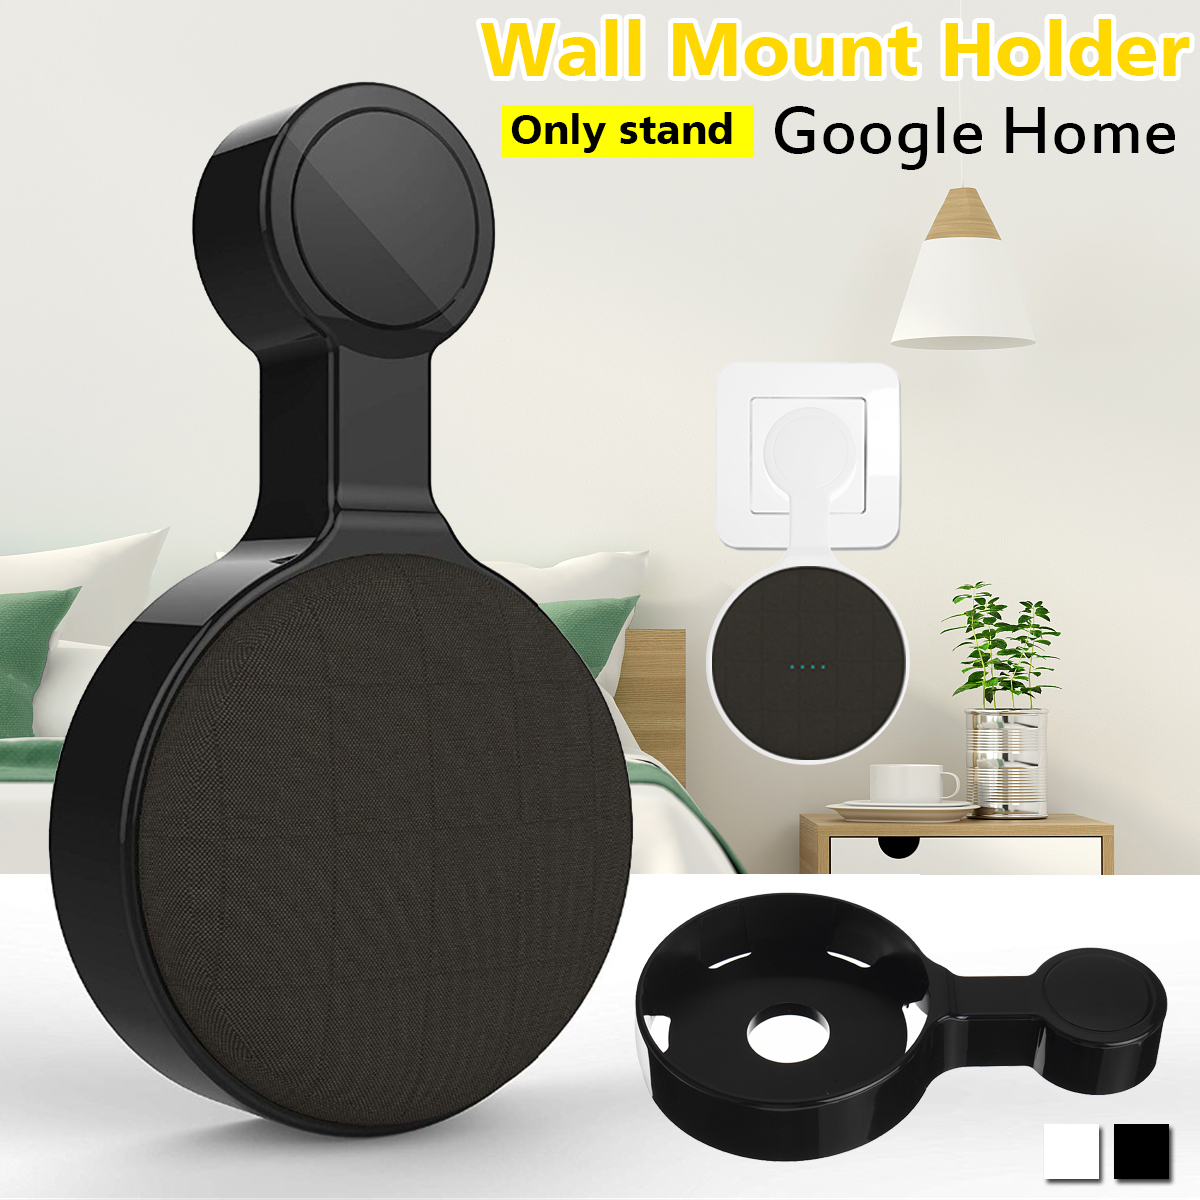 Portable Wall Mount Holder Plastic Speaker Stand for Google Home Speaker